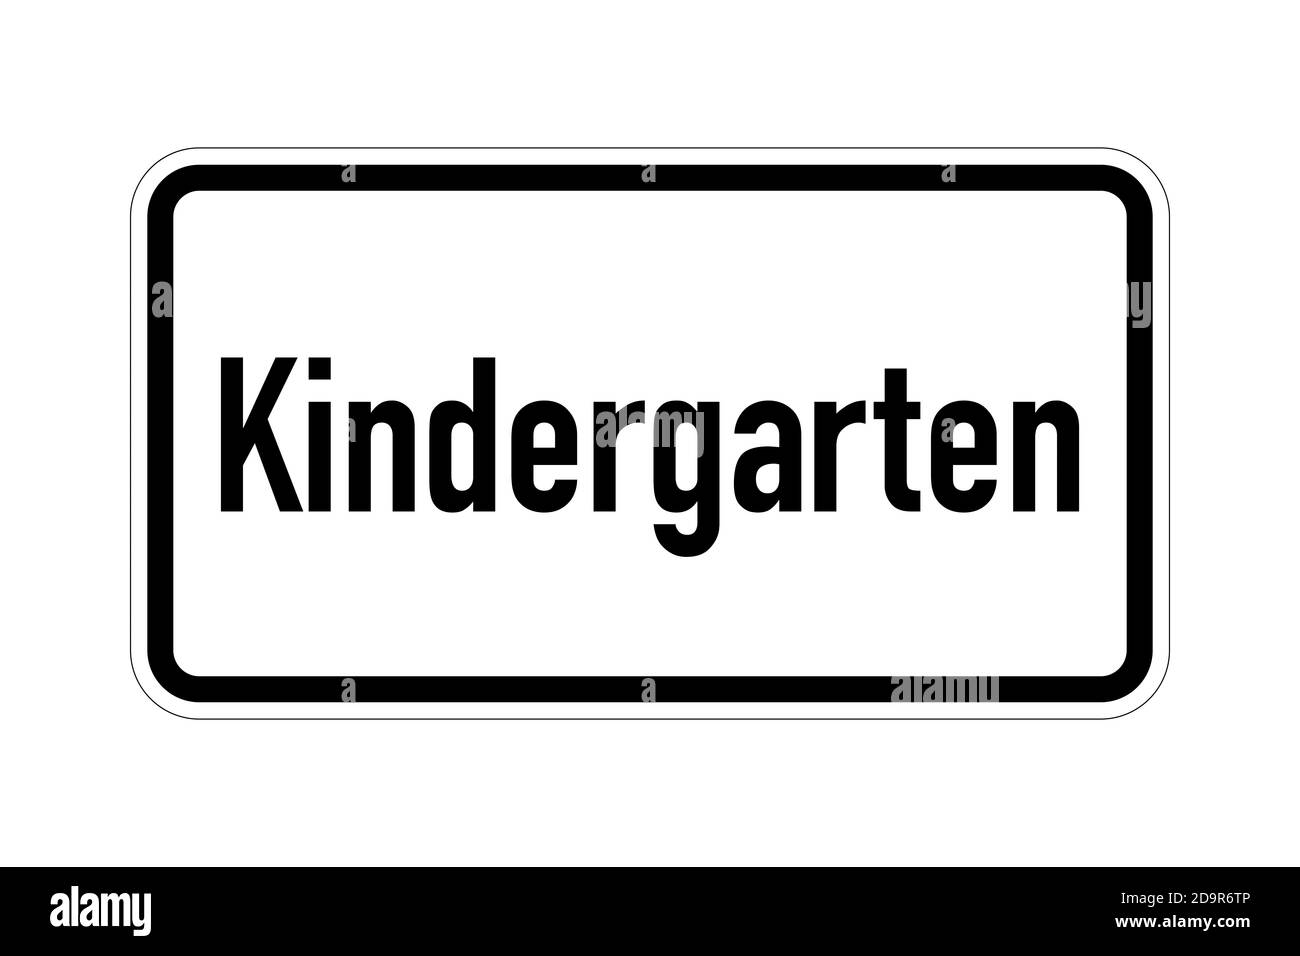 Kindergarten road sign Stock Photo